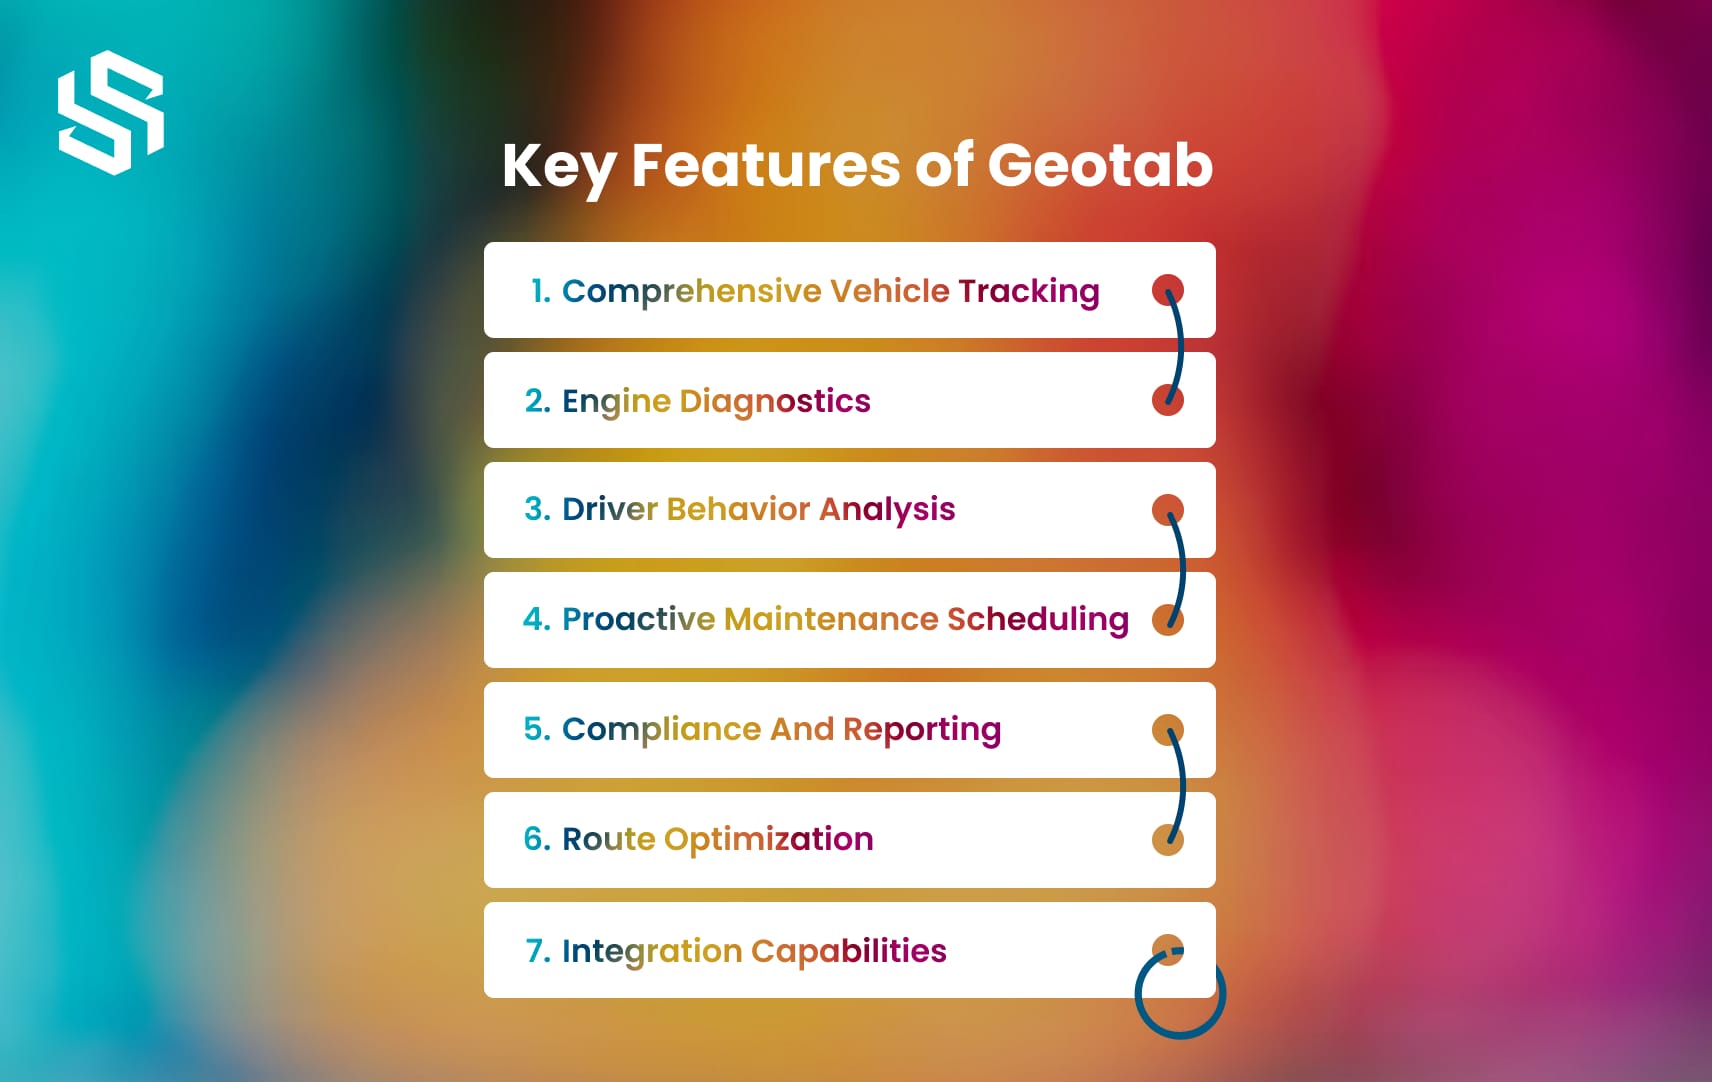 Key Features of Geotab